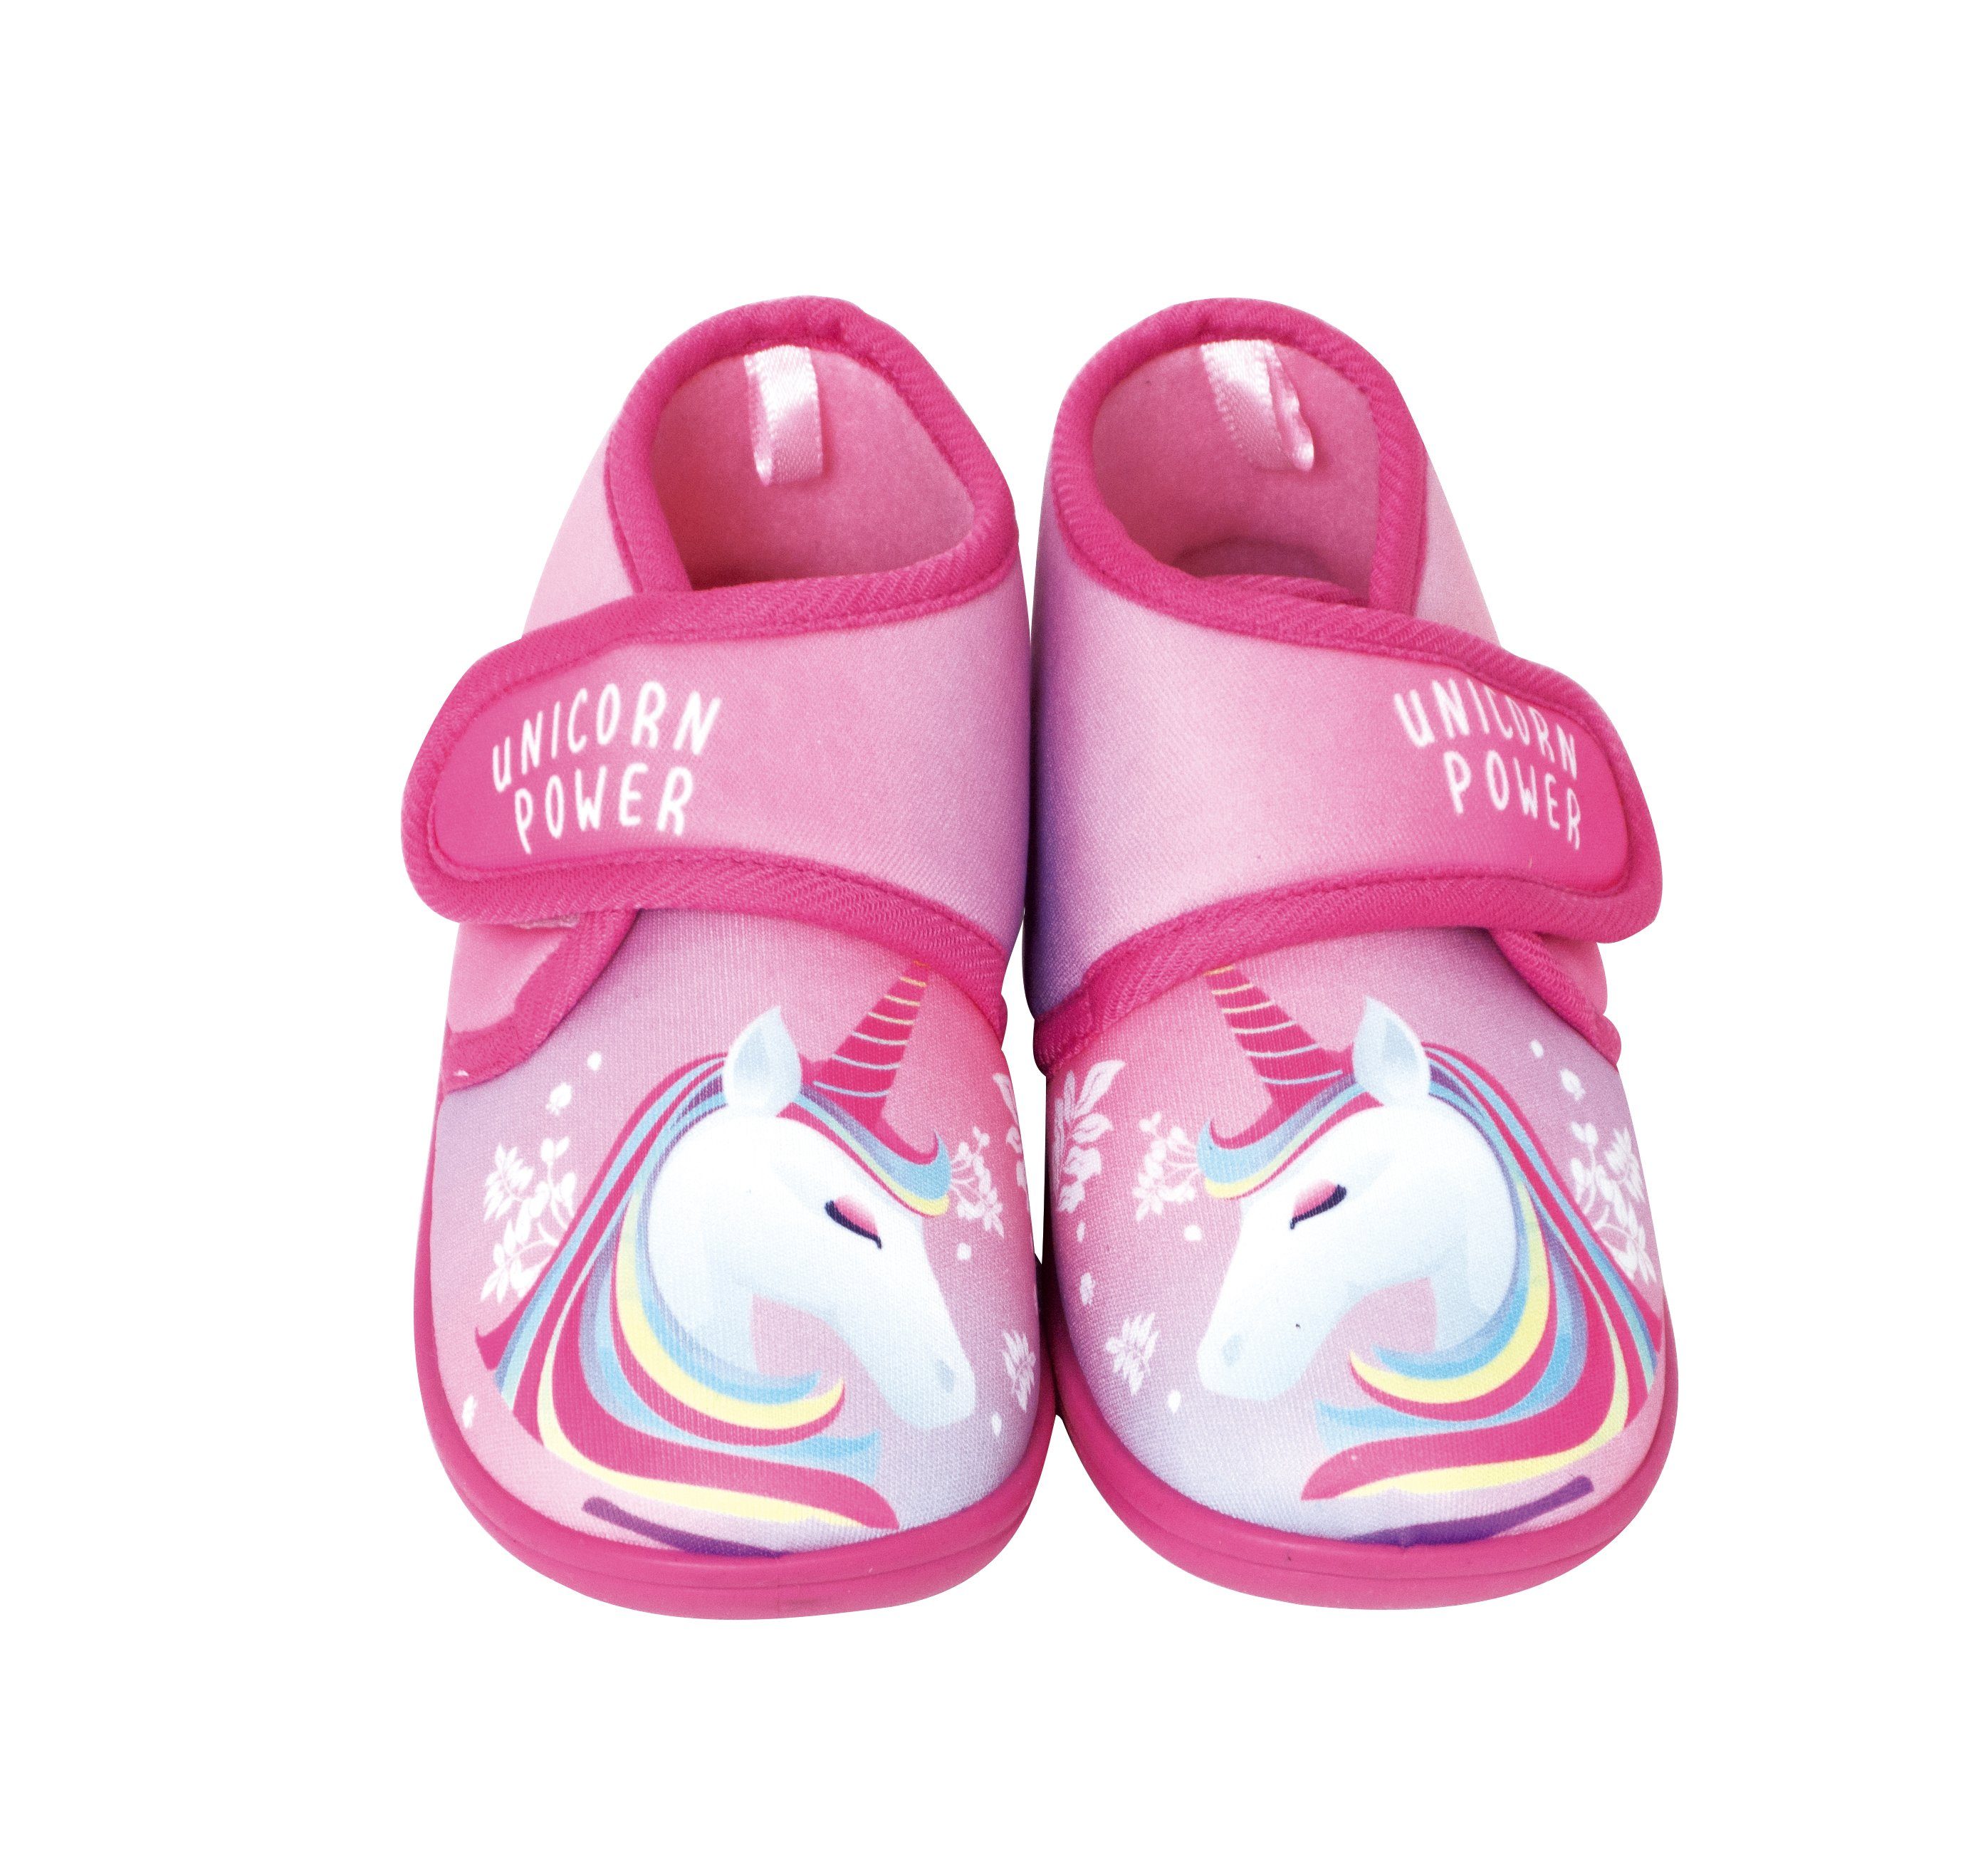 Starkids »Unicorn Power« Hausschuh Einhorn Kinder Hausschuhe Pantoffeln  Kindergarten - Schuhe Kinderschuhe 22-27 online kaufen | OTTO